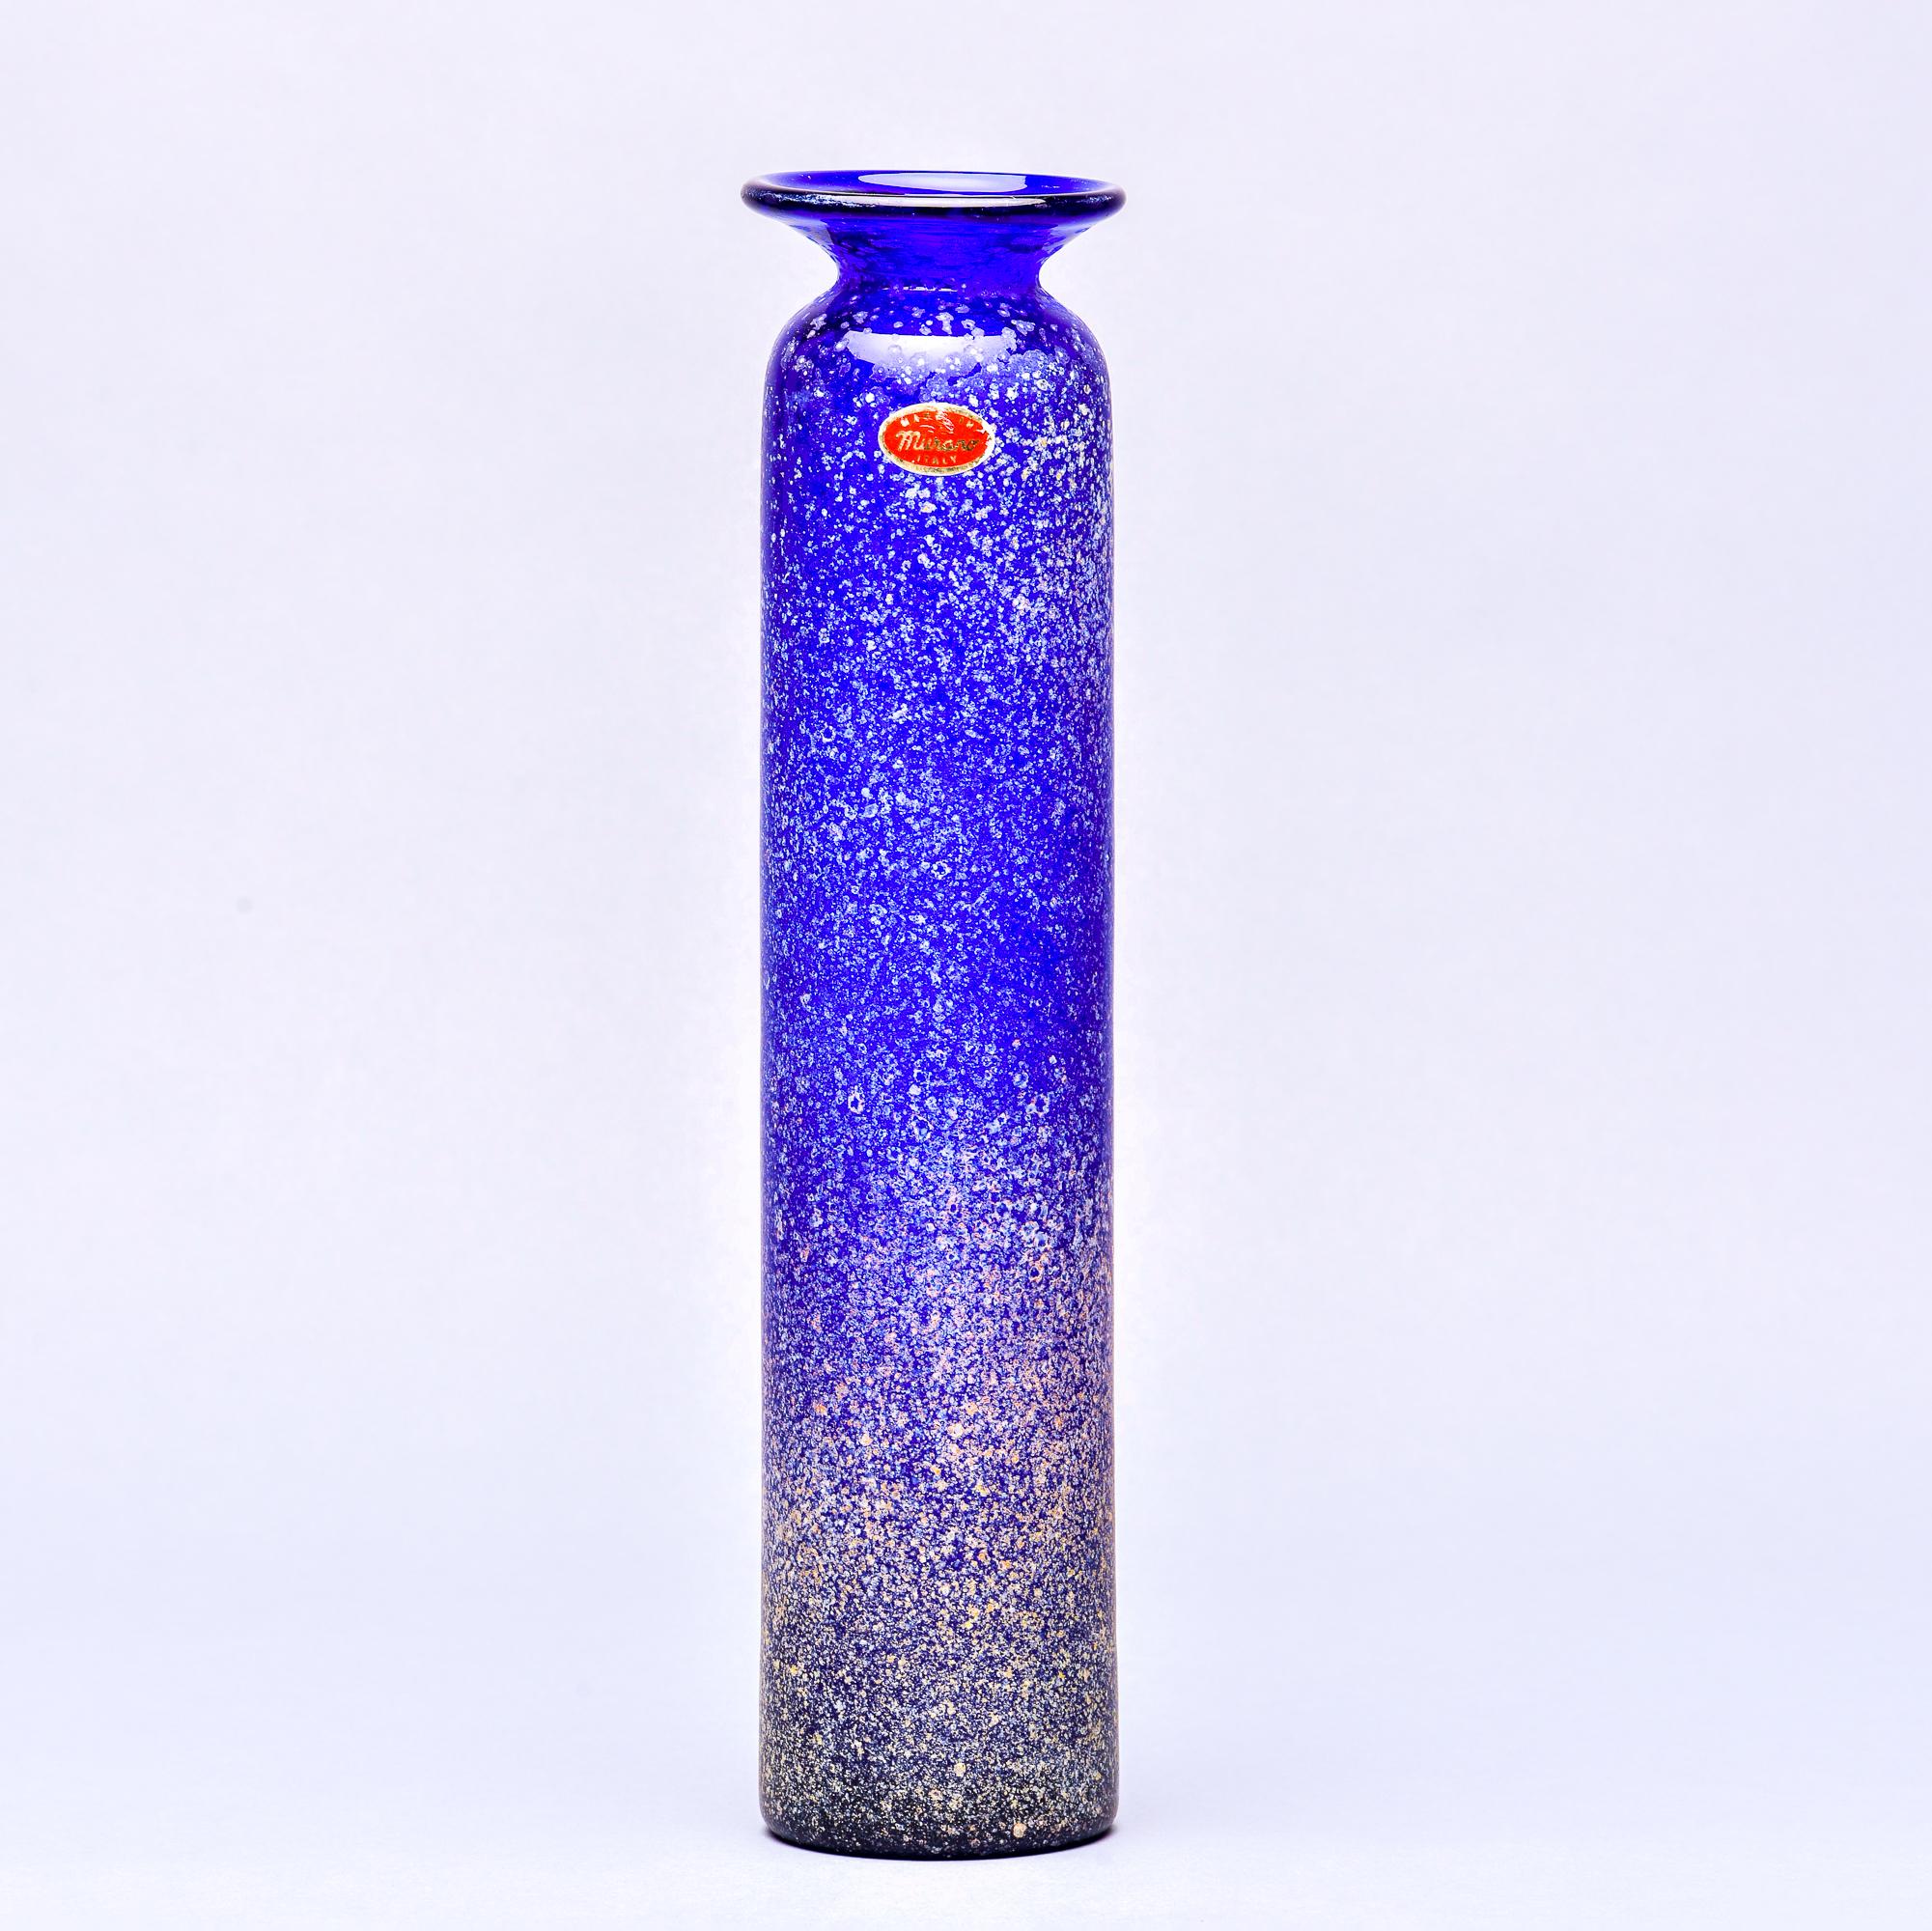 Trouvé en Italie, ce grand vase élancé en verre de Murano de style scavo, bleu cobalt, datant des années 1960, mesure un peu moins de 15 pouces. L'étiquette originale de Murano est toujours apposée, mais le vase n'est pas signé par le fabricant.